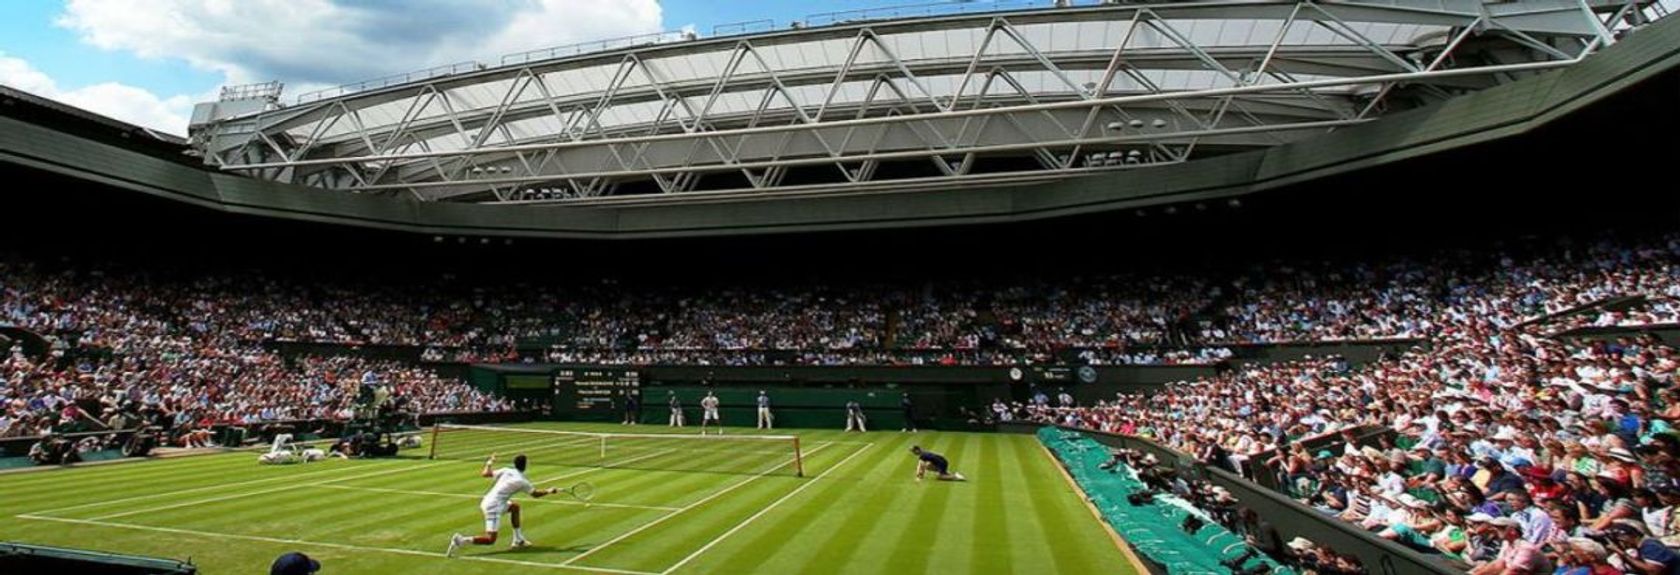 És louco por ténis? Depois não deve faltar uma visita ao Wimbledon Tennis Museum durante a sua visita a Londres